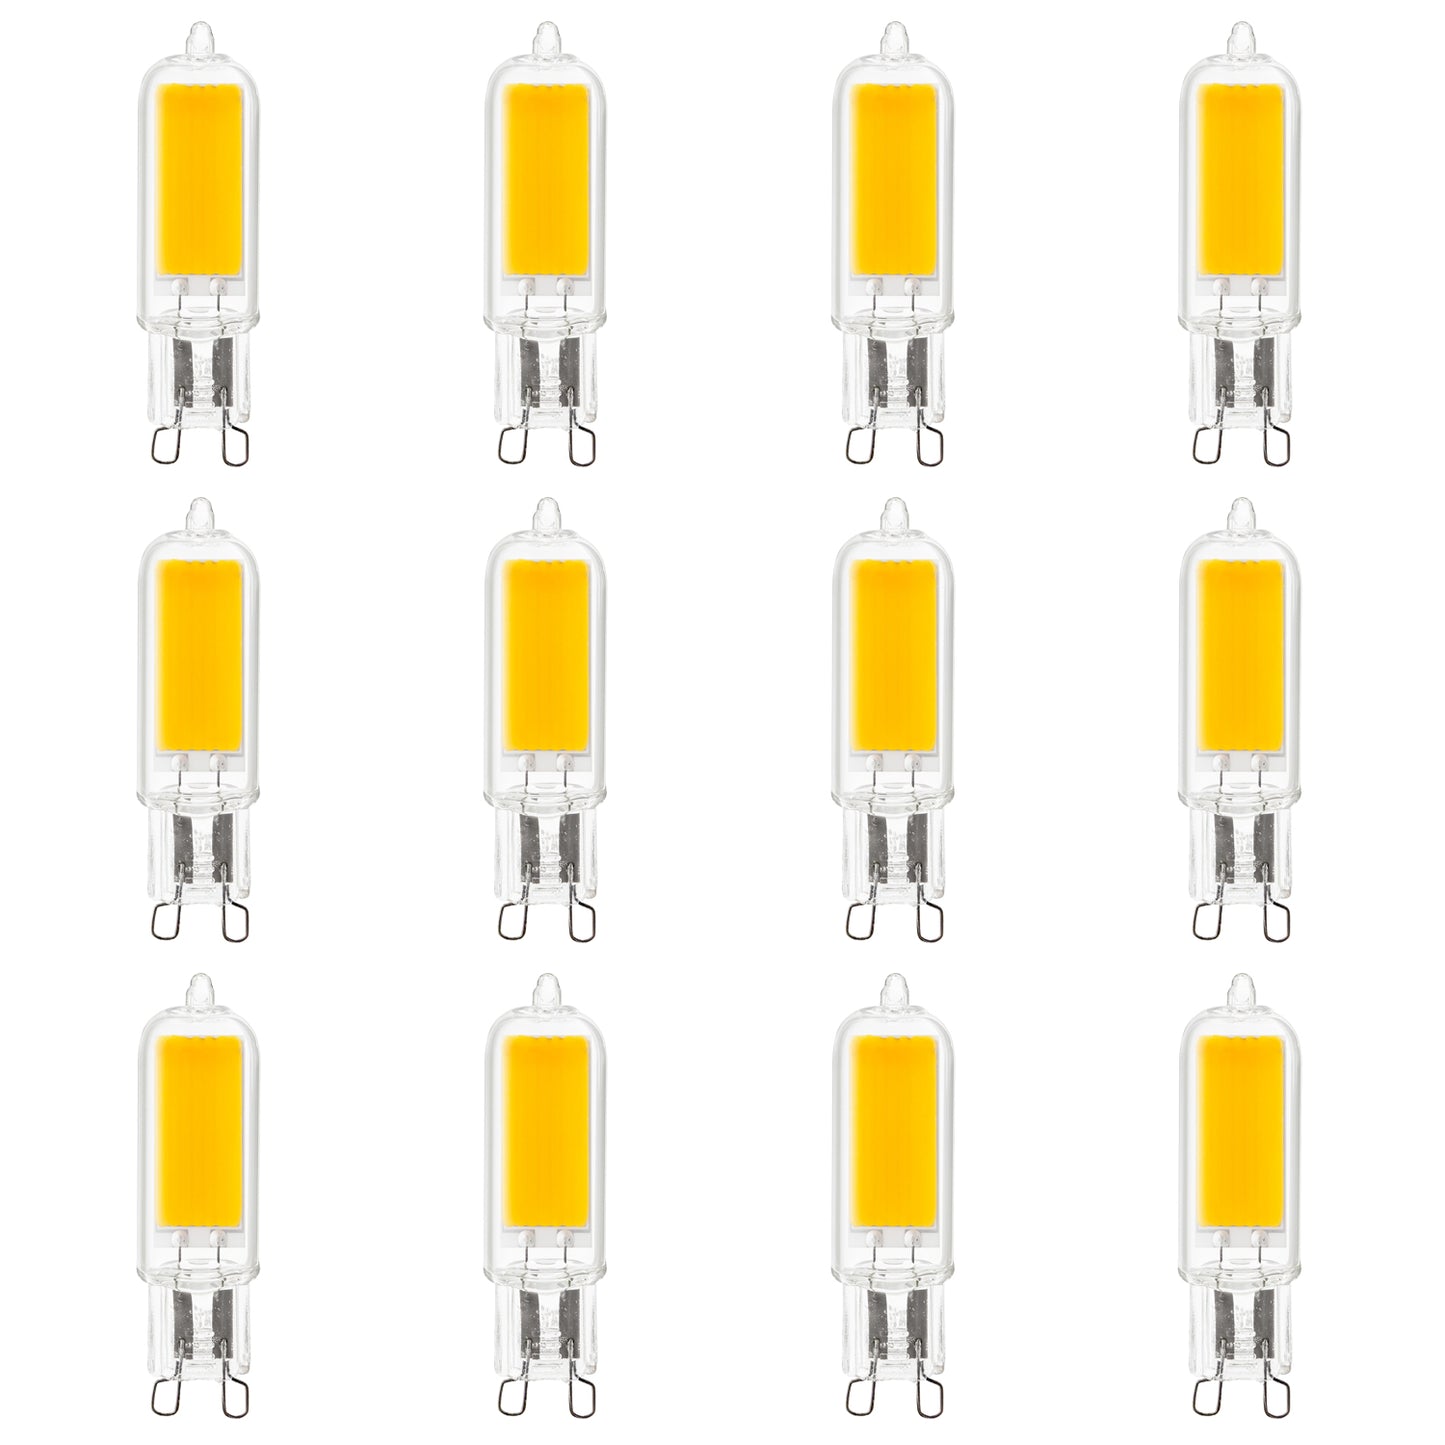 Sunlite LED G9 Light Bulbs, 3 Watt (40W Halogen Equivalent), 400 Lumen, 3000K Warm White, G9 Base